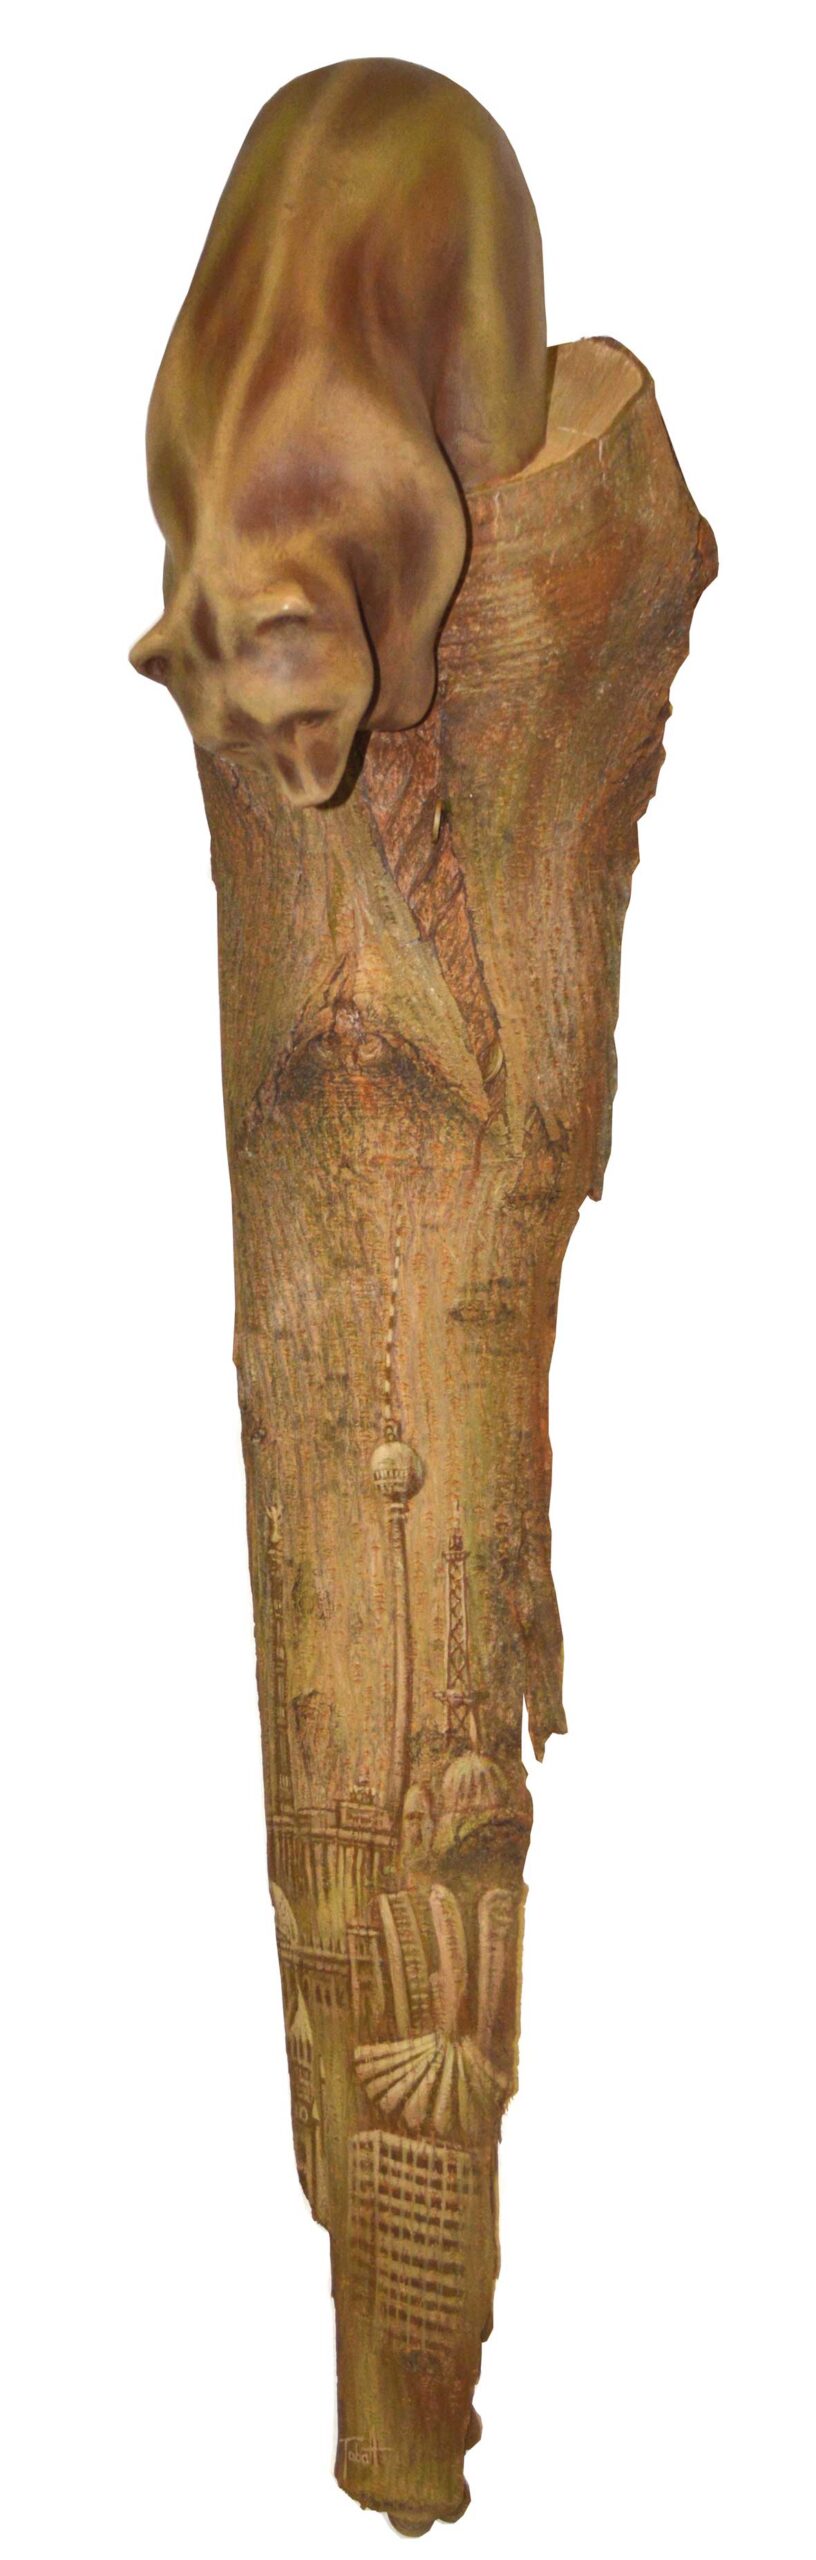 Wappentiere : Stammbaum , Berliner Bär sitzt auf einem Baumstamm mit Berliner Motiven , Uwe Tabatt